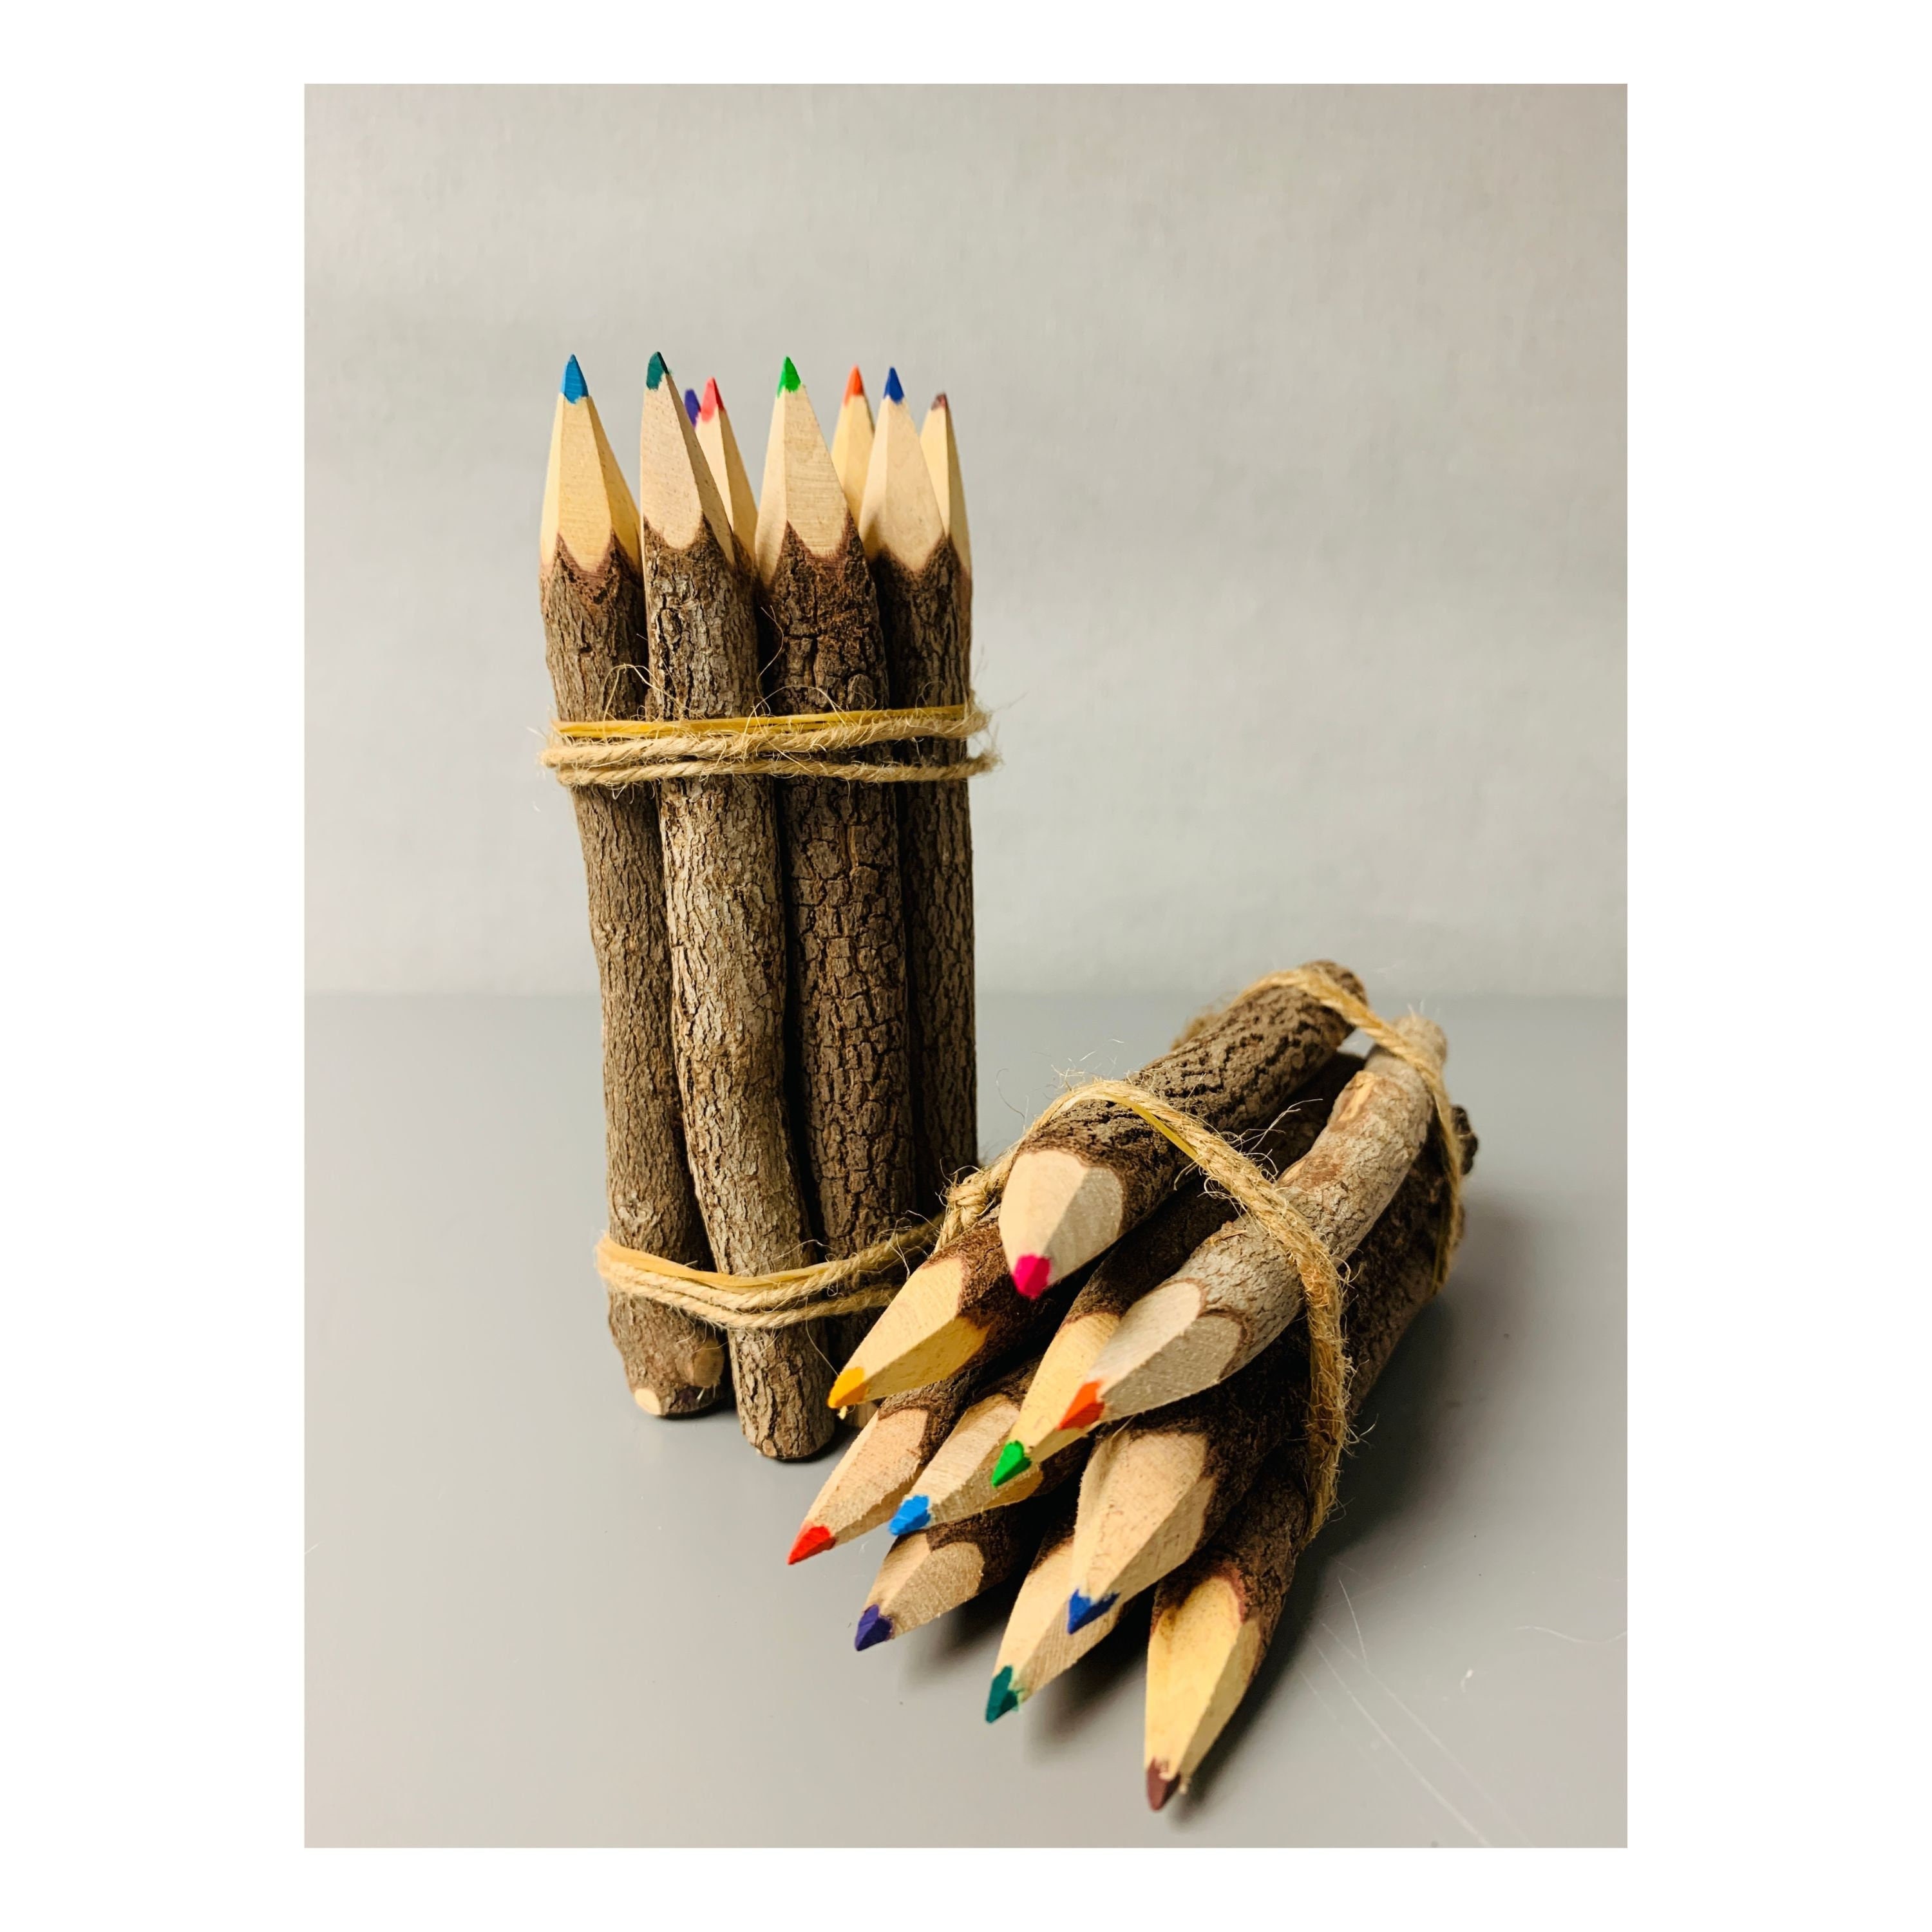 Carmel Lumber Crayon, Lumber Marking Crayon, Lumber Marker, Keel Crayon,  High-density Clay Based Paint Crayon, Pack of 12 